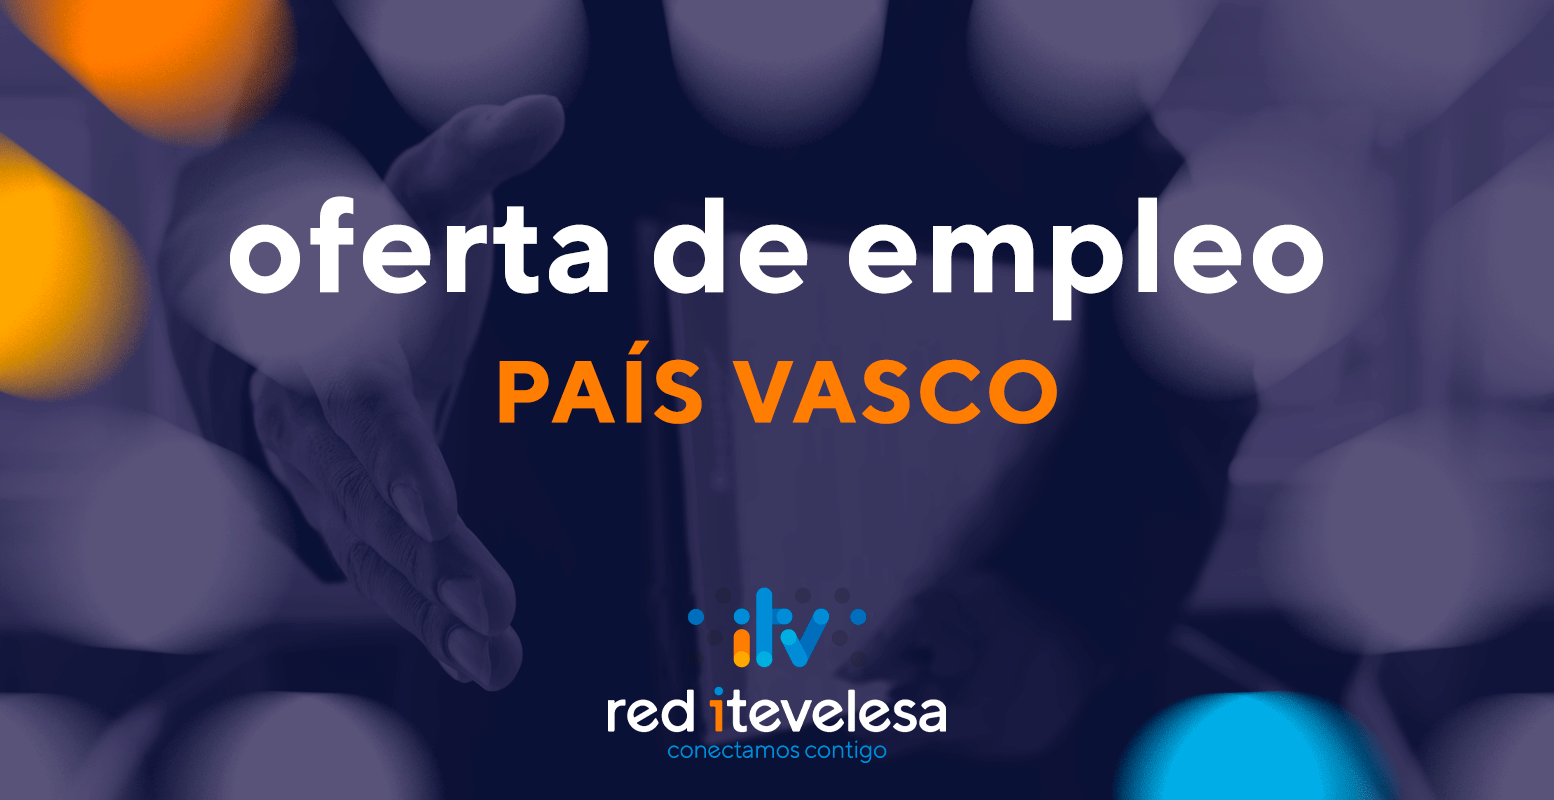 Oferta de empleo: Se buscan 2 Inspectoras ITV o Inspectores ITV para estación de Irún, País Vasco